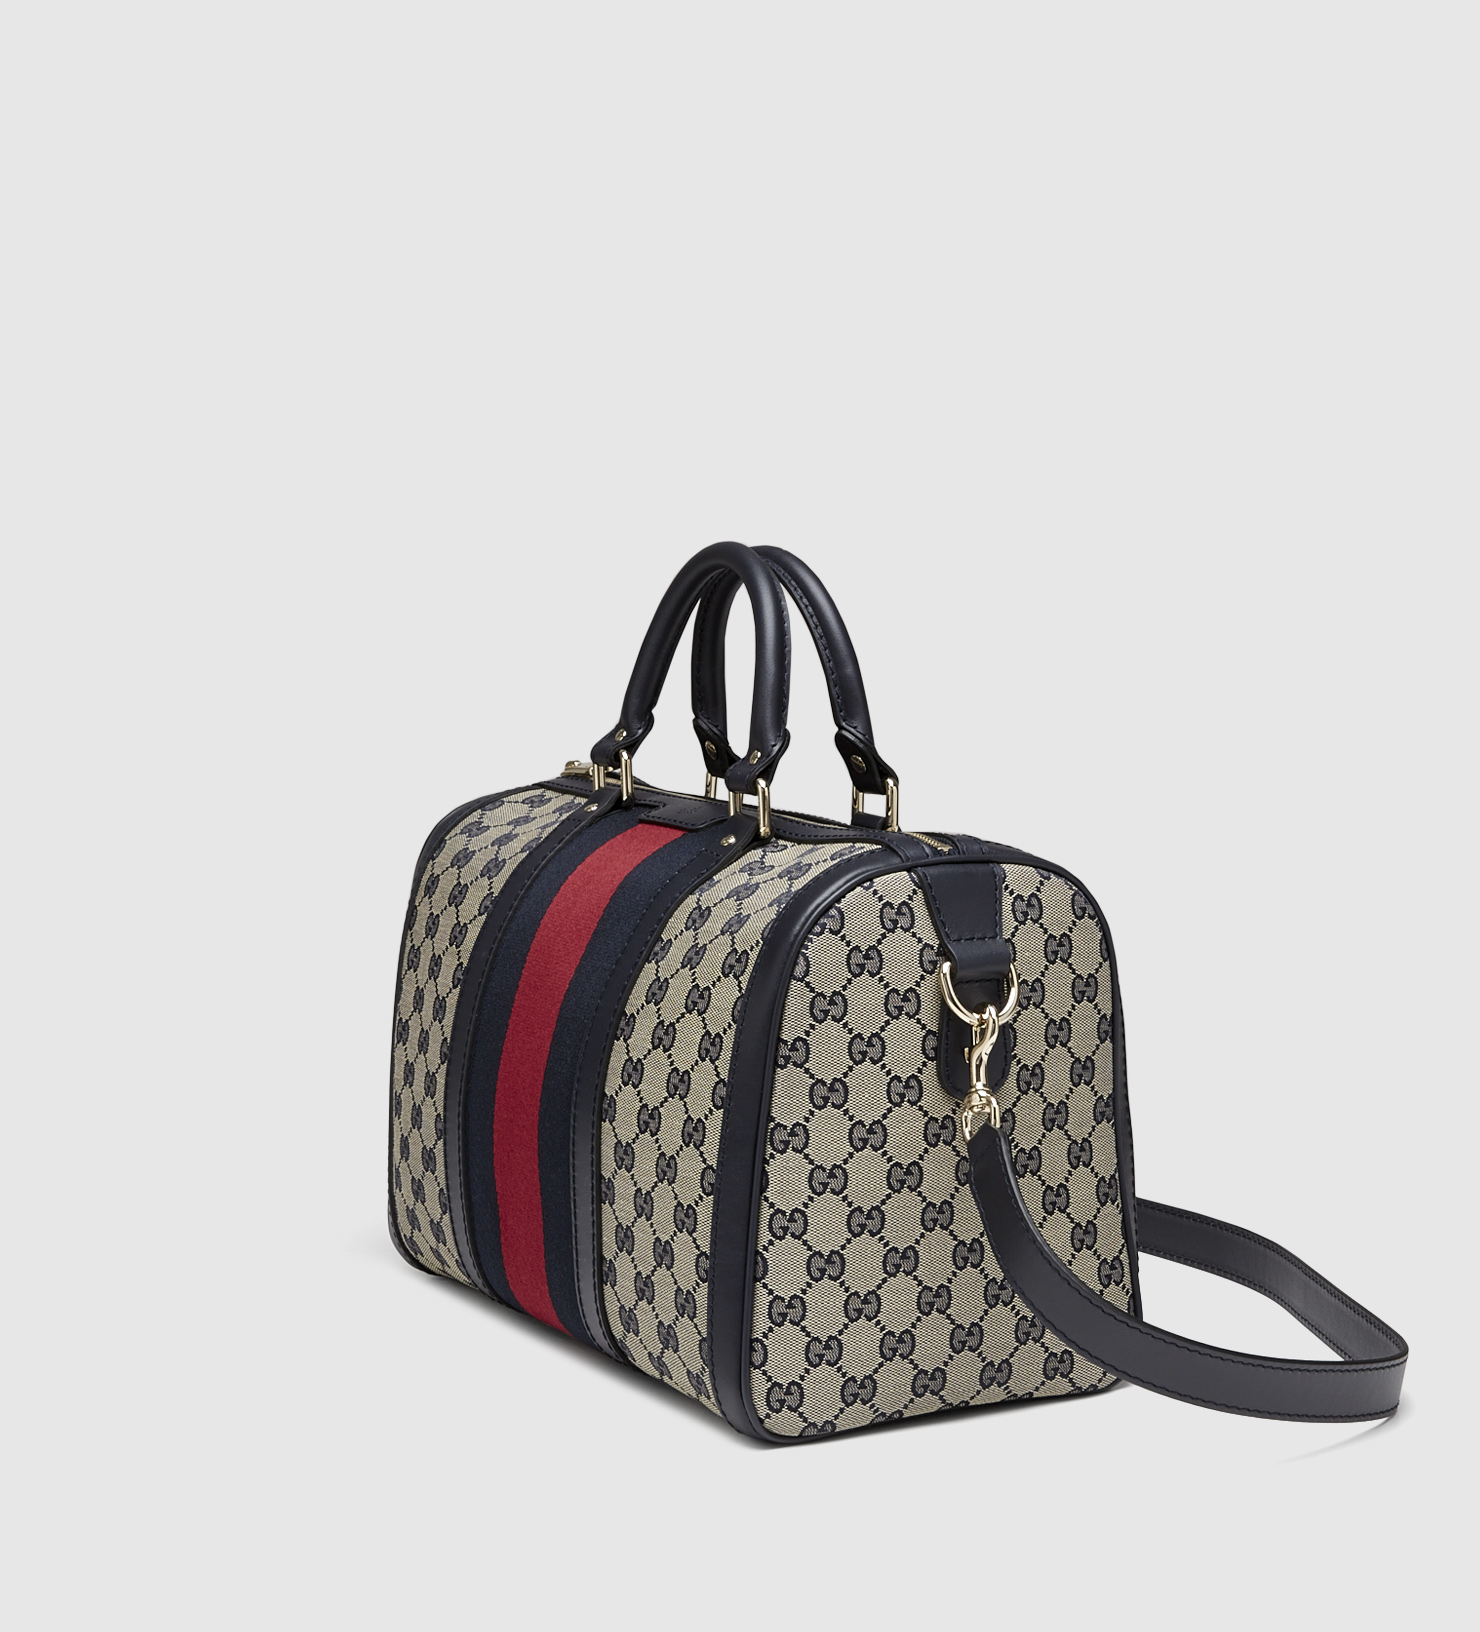 Gucci Boston Bag Original Vs Fake | Jaguar Clubs of North America